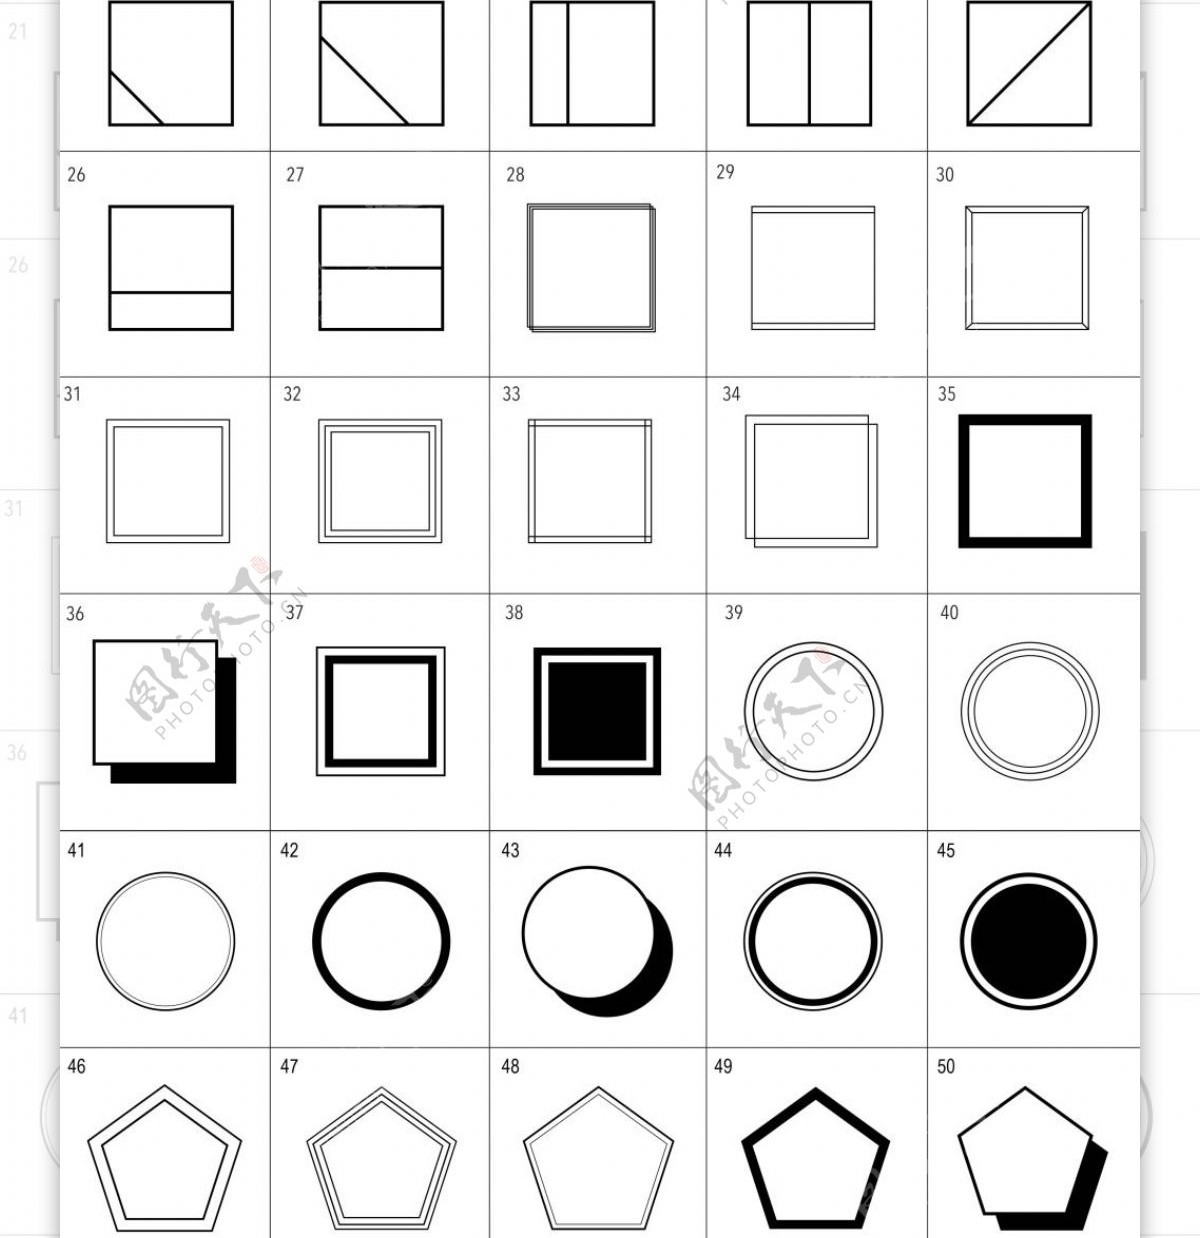 几何框架单色图标素材下载